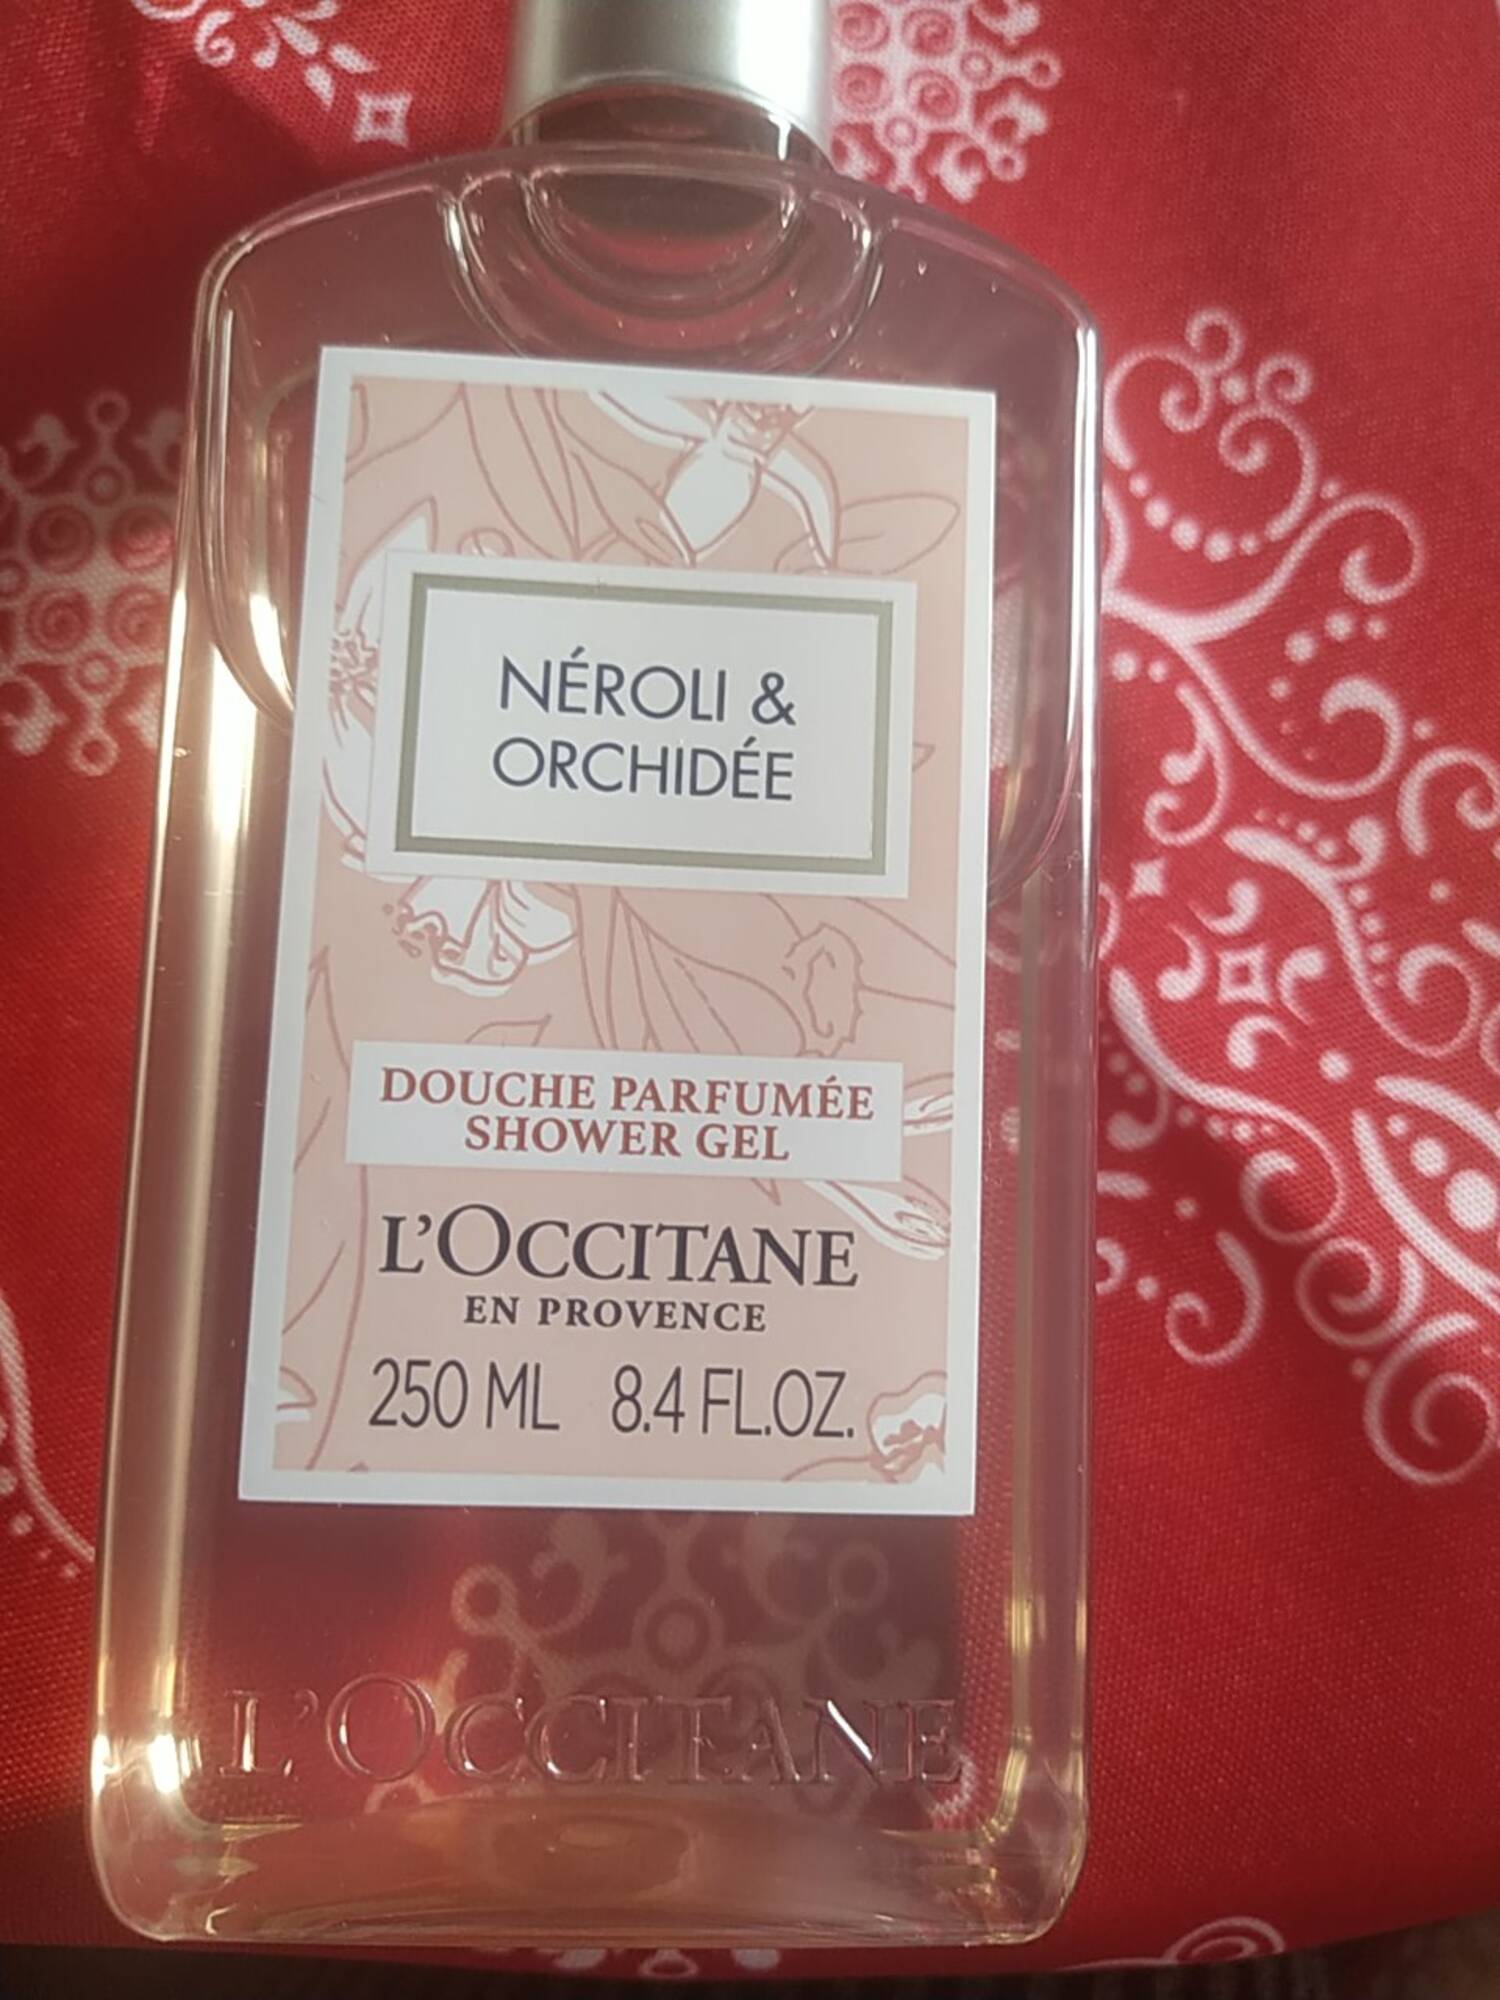 L'OCCITANE - Néroli &  orchidée - Douche parfumée